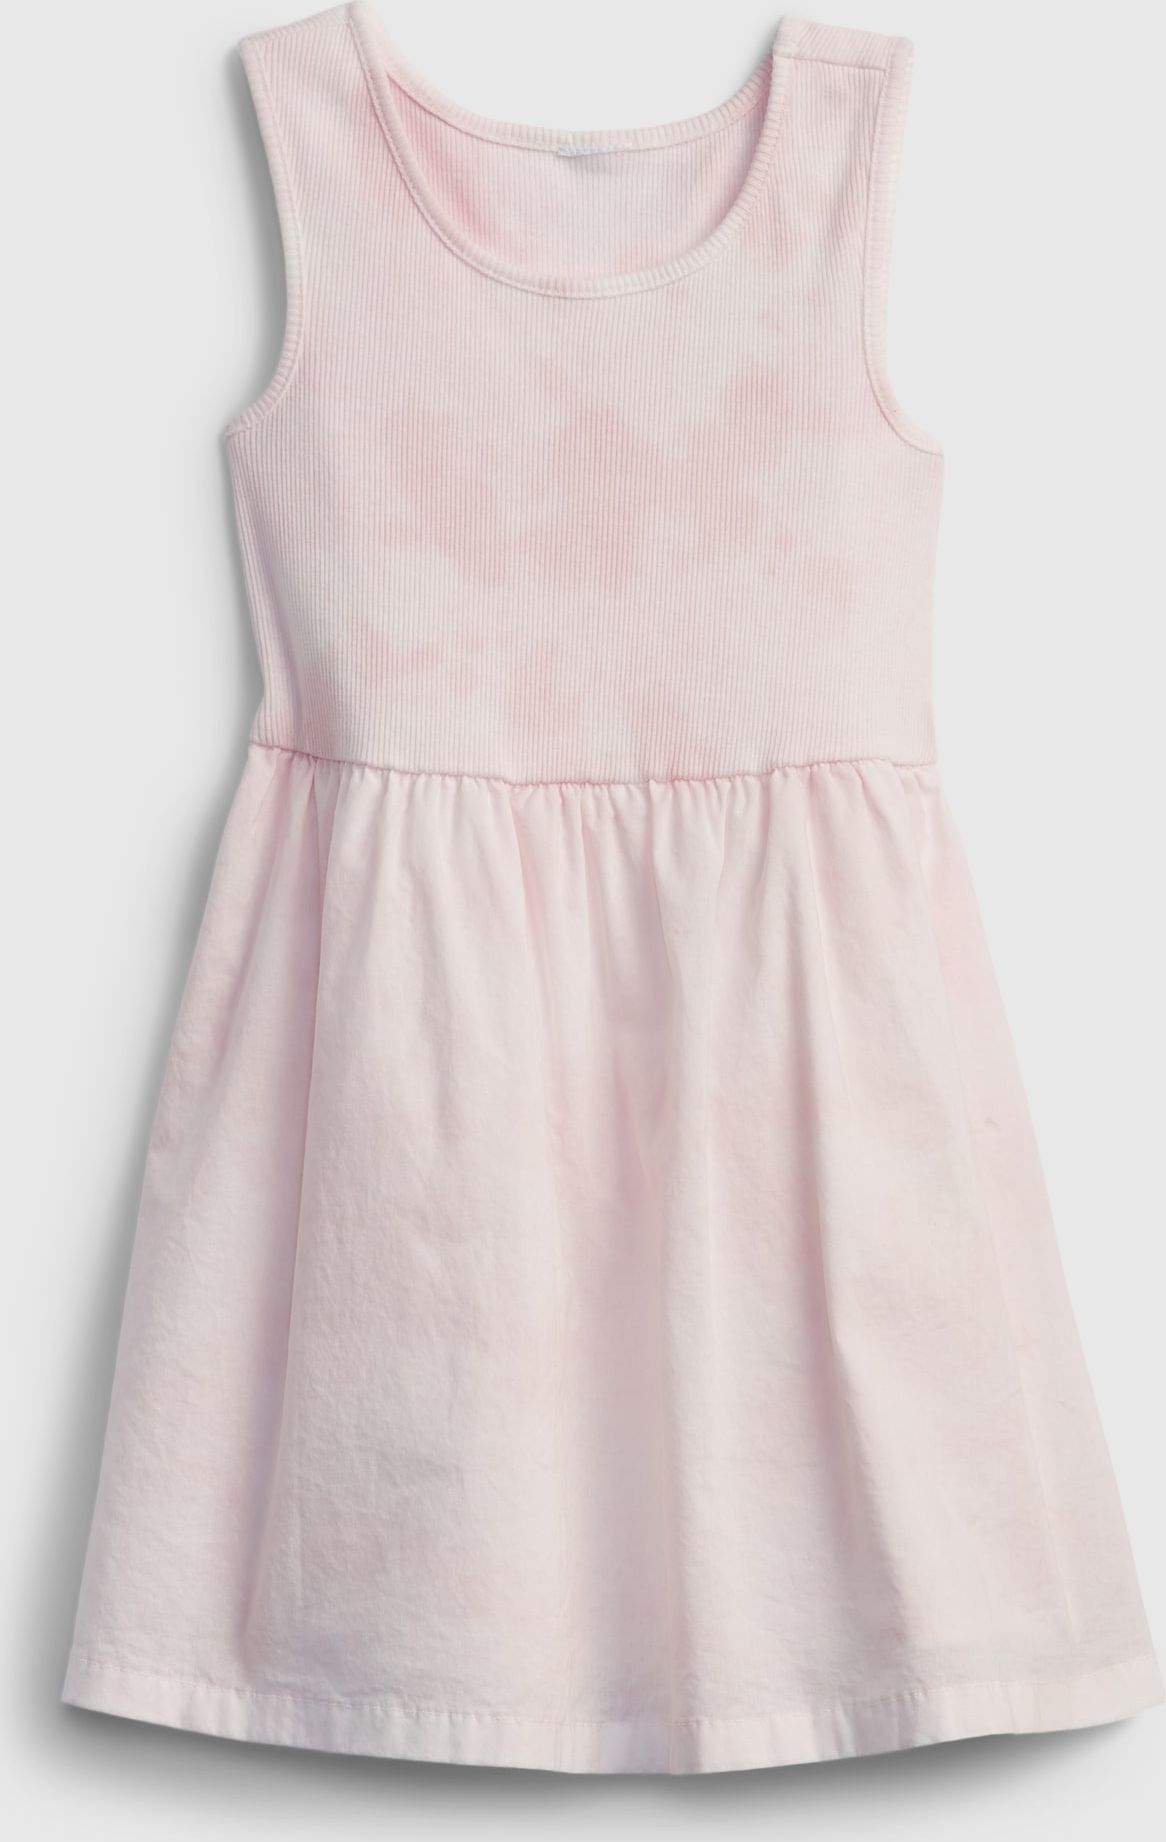 Dětské šaty mix-media tank dress Růžová - 2YRS - obrázek 1